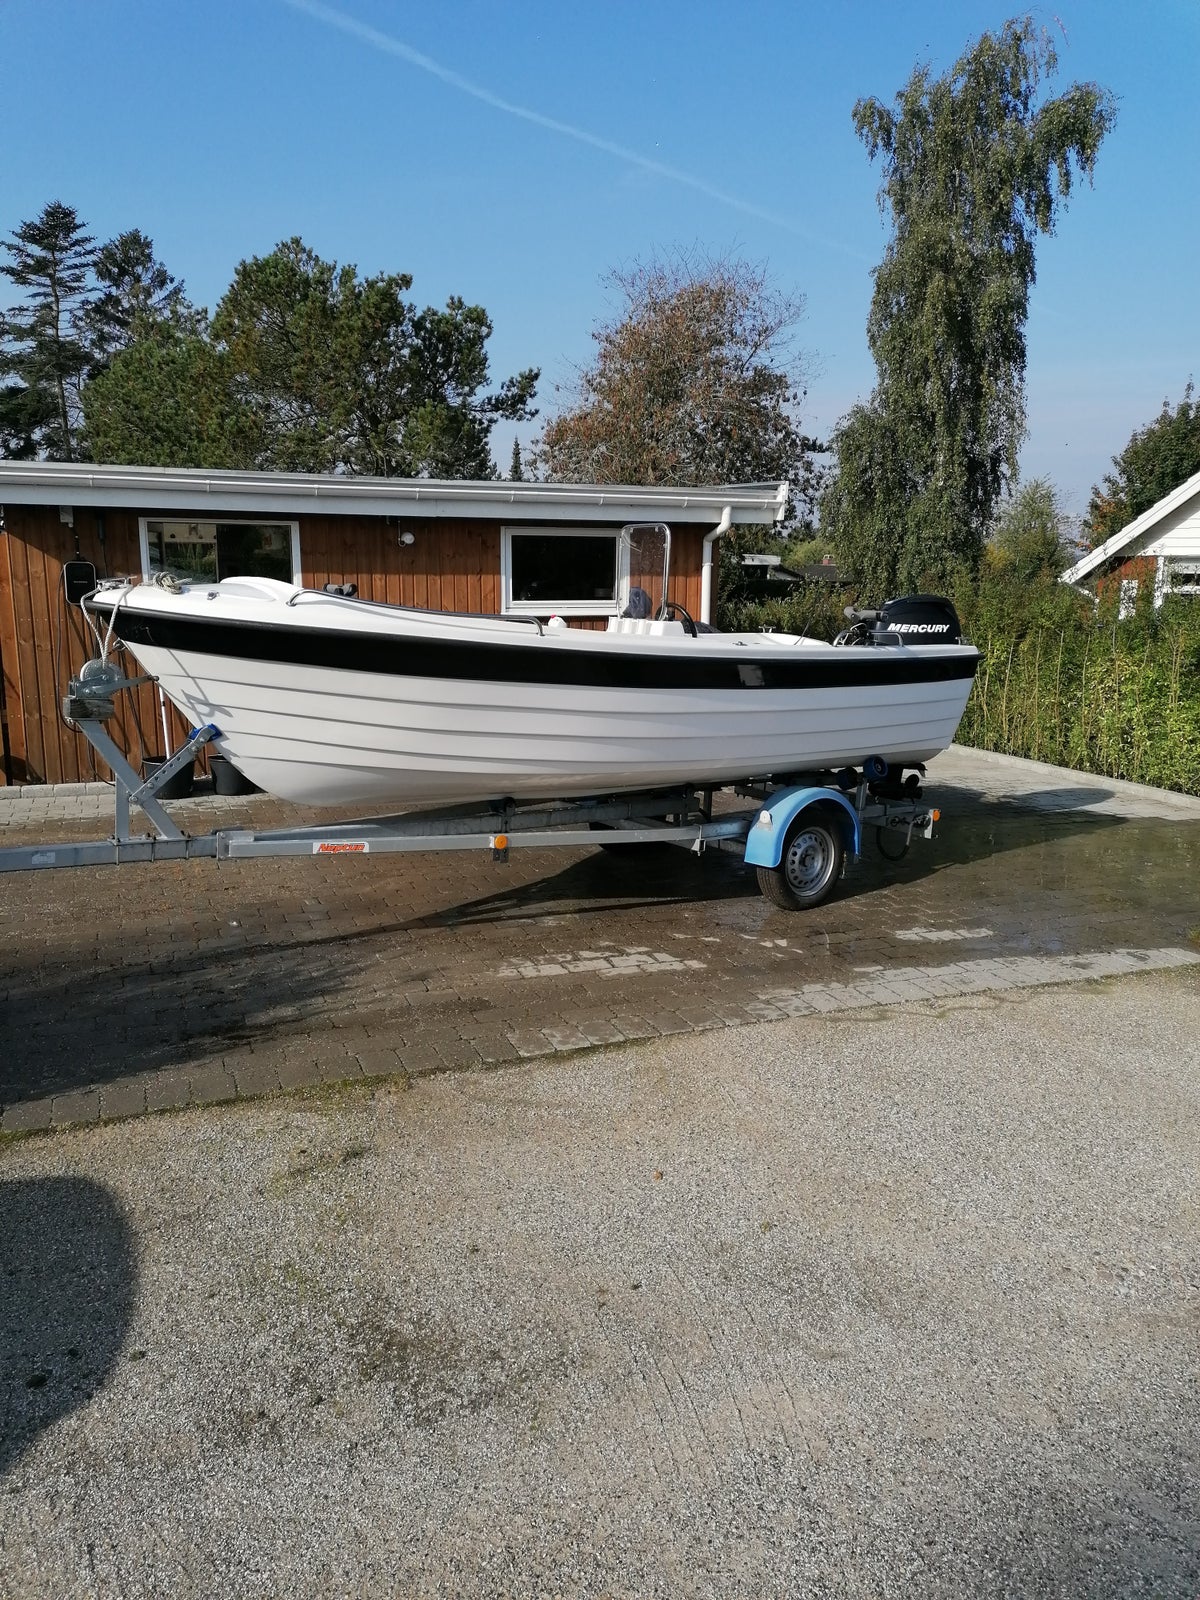 Styrepultbåd, Nydam 470 Sport, årg. 2019